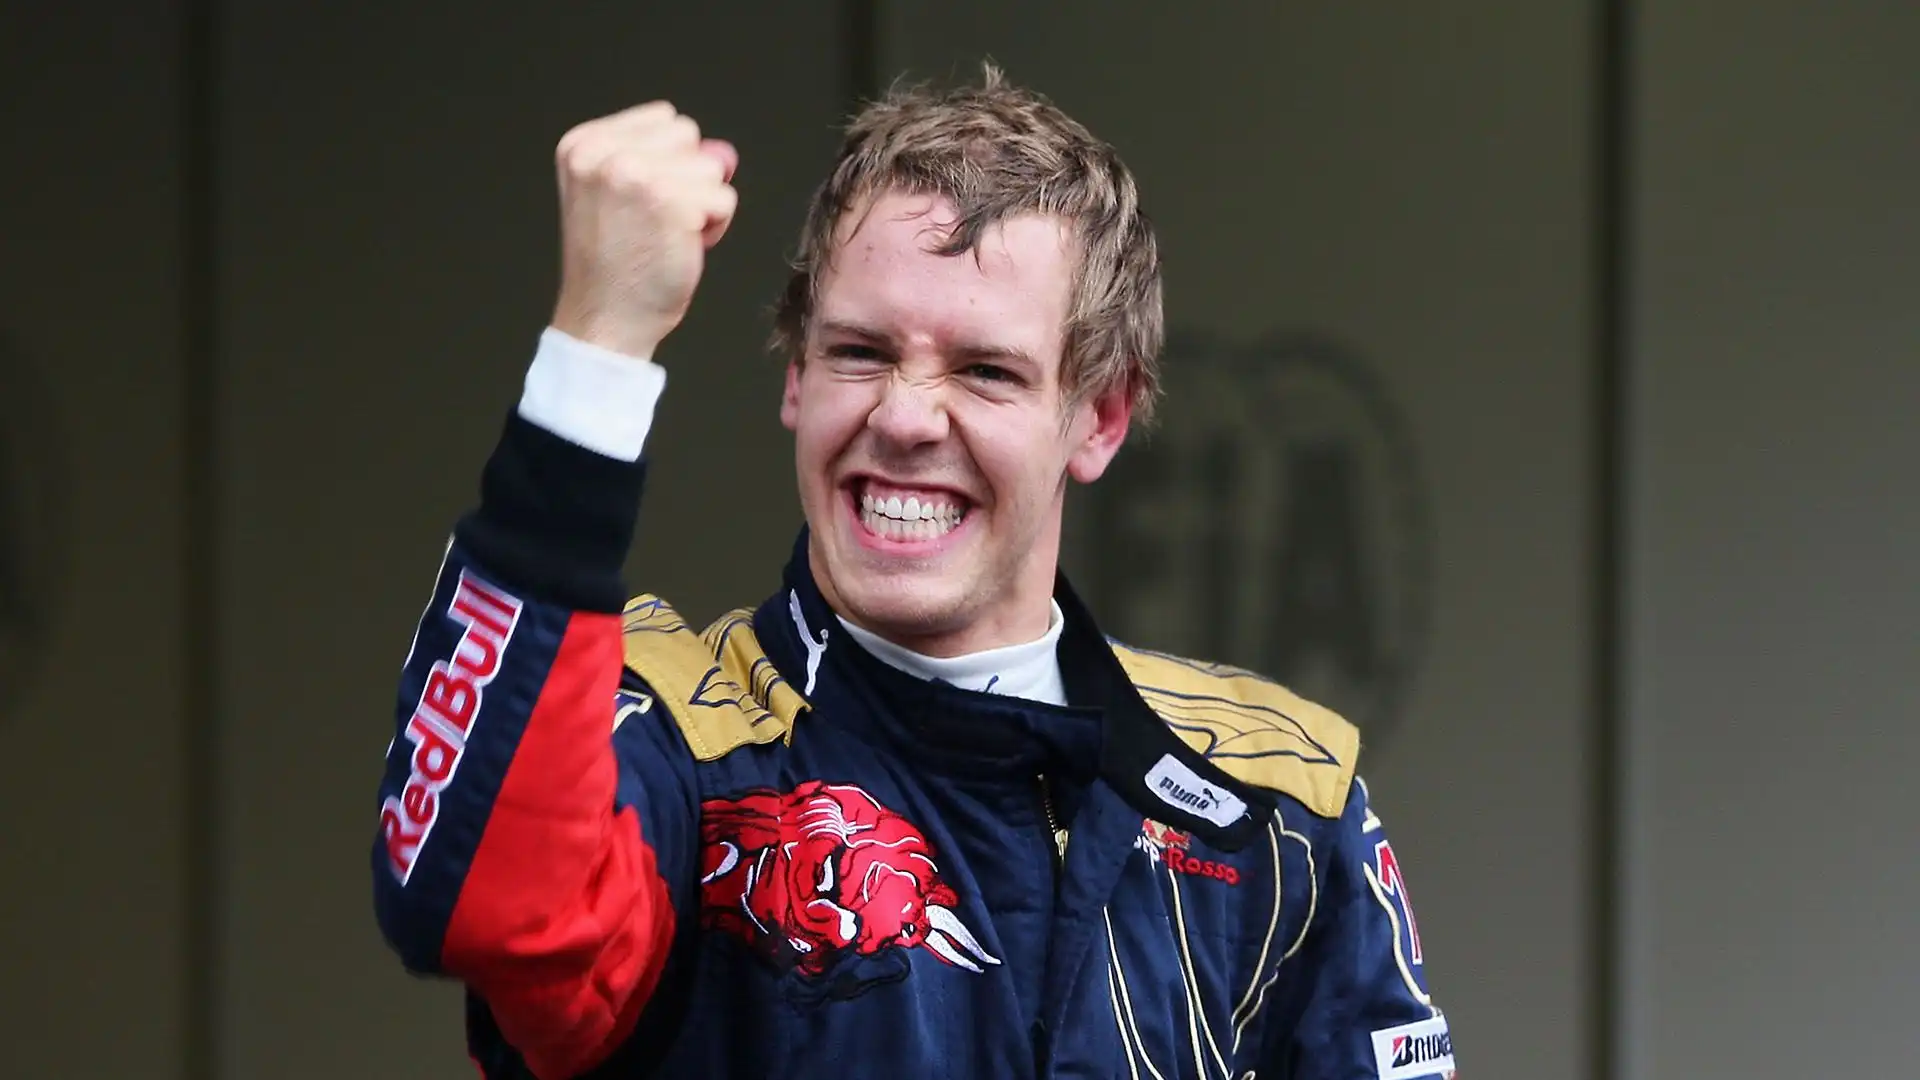 Il quattro volte campione del mondo secondo le indiscrezioni potrebbe tornare in F1 nel 2025